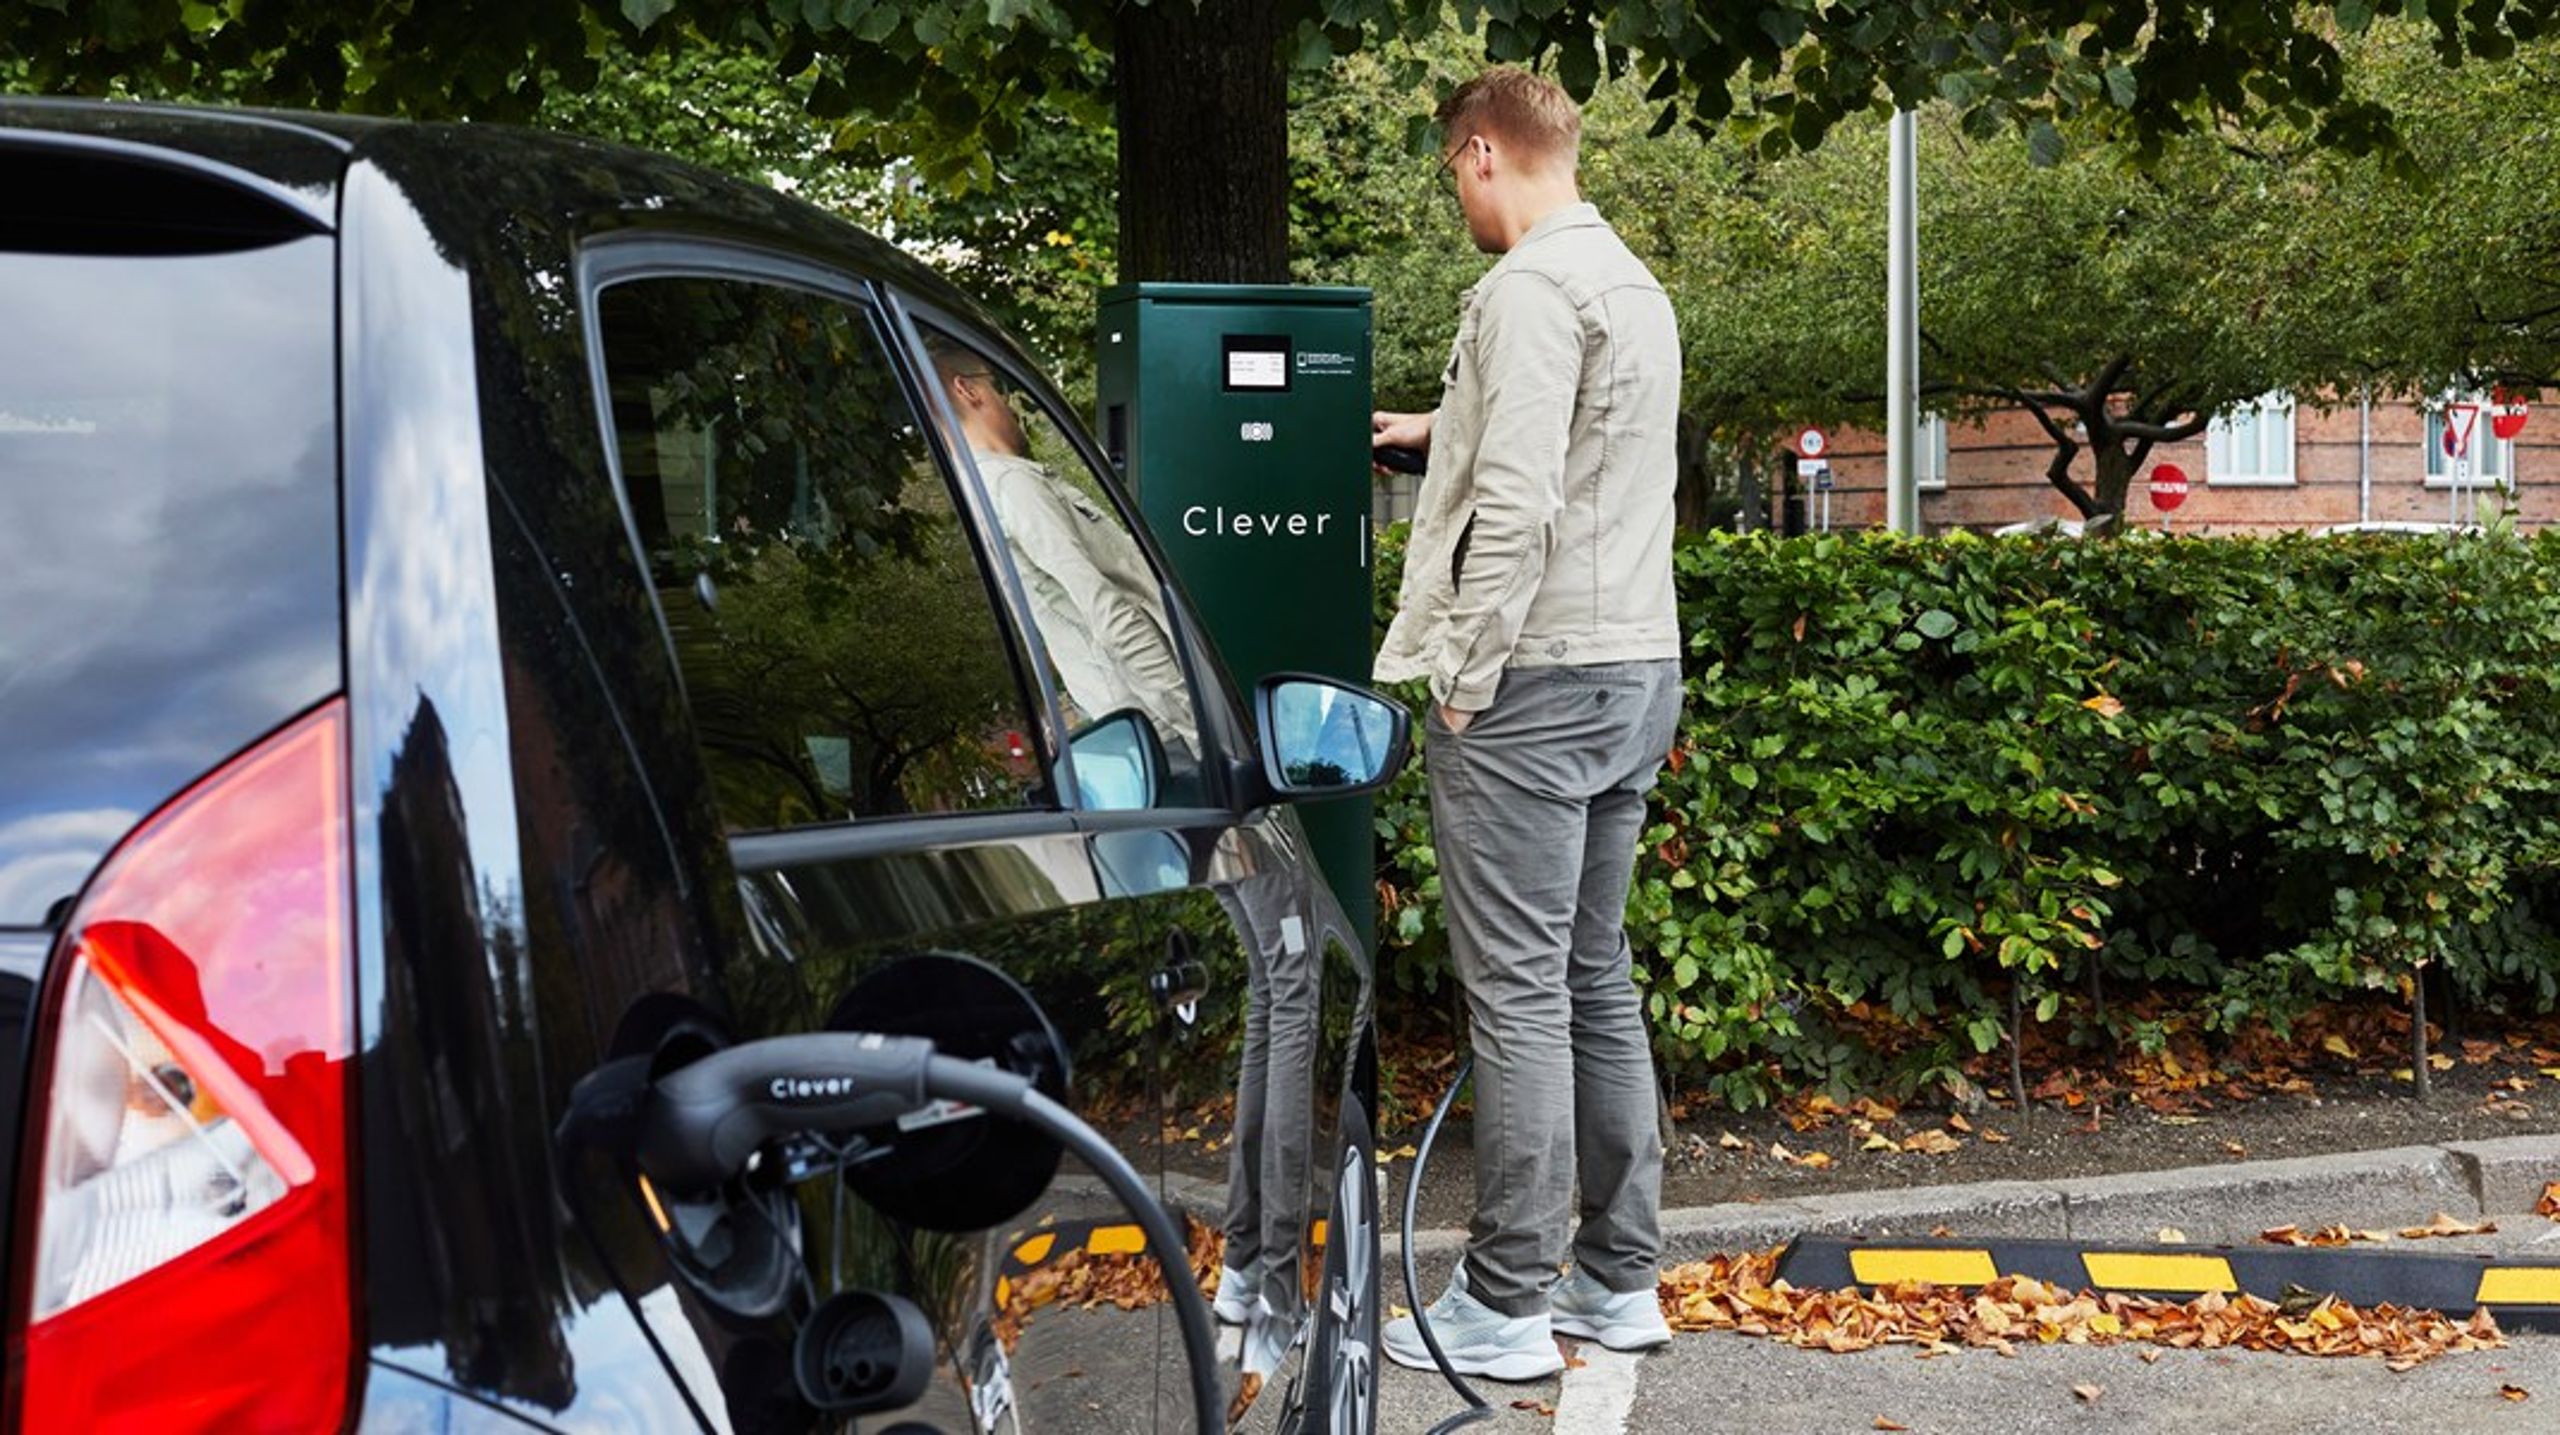 Der er især behov for offentlige ladestationer i byerne, hvor mange borgere ikke har adgang til egen parkeringsplads, skriver Casper Kirketer-Møller.